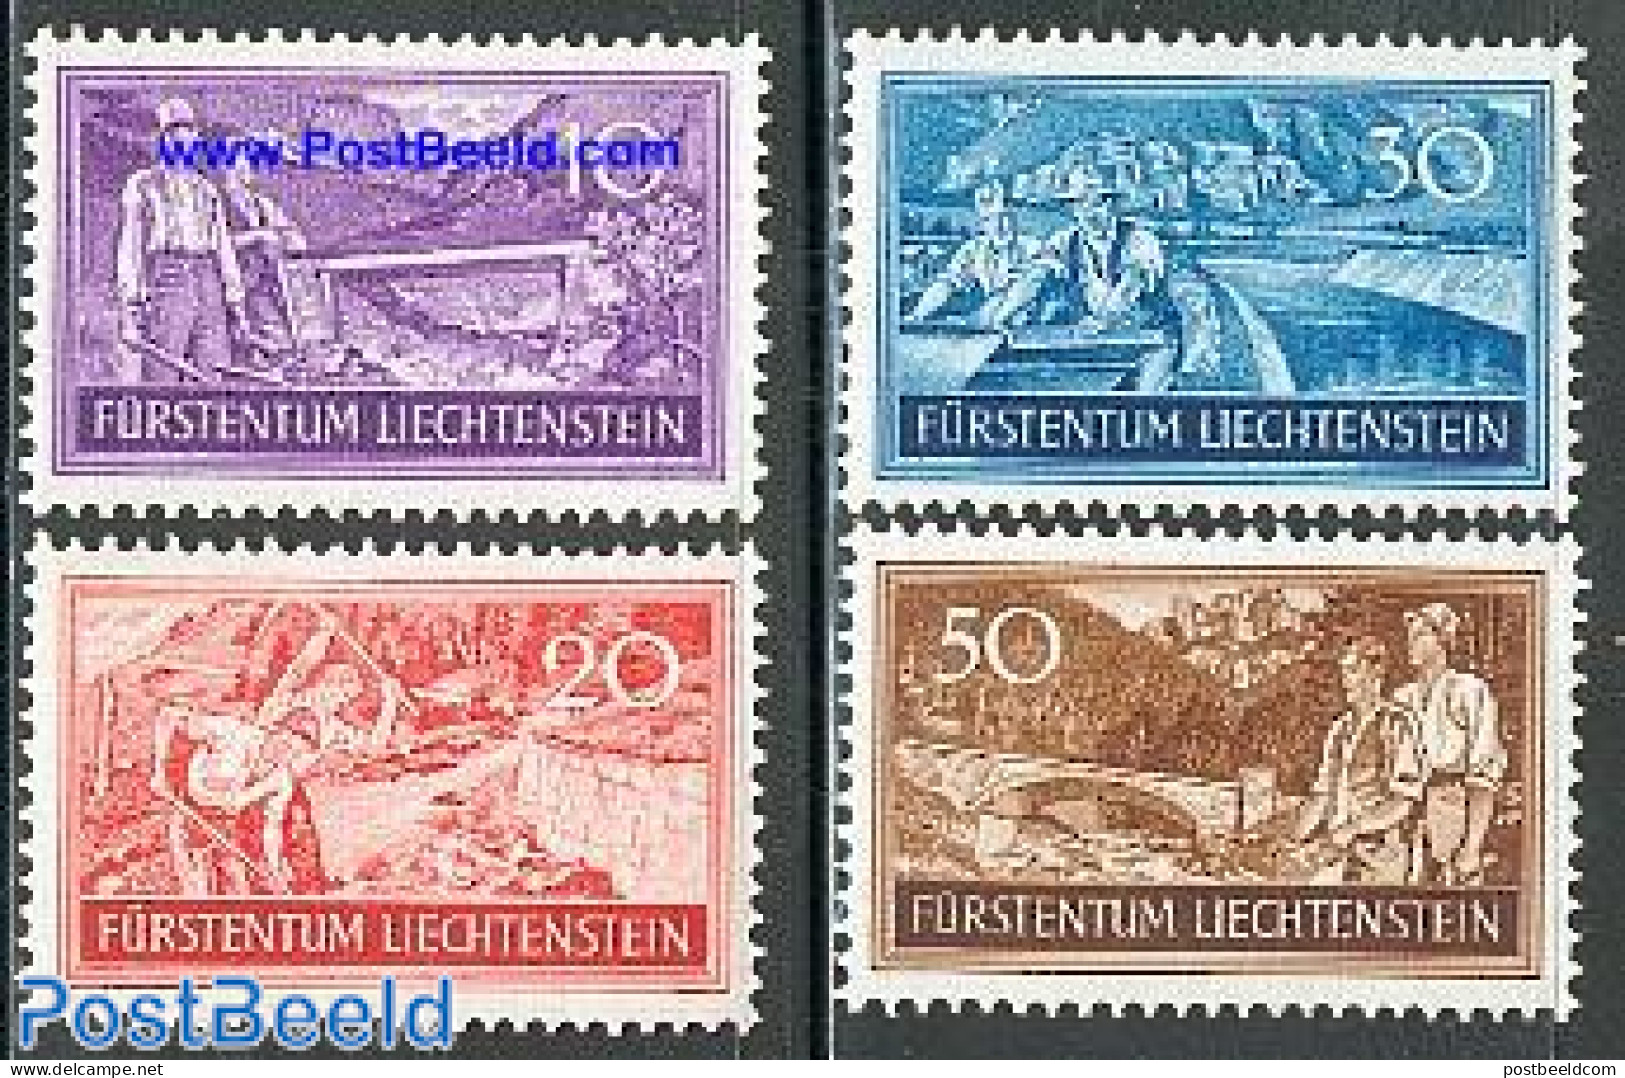 Liechtenstein 1937 Labour 4v, Mint NH, Nature - Water, Dams & Falls - Art - Bridges And Tunnels - Ongebruikt